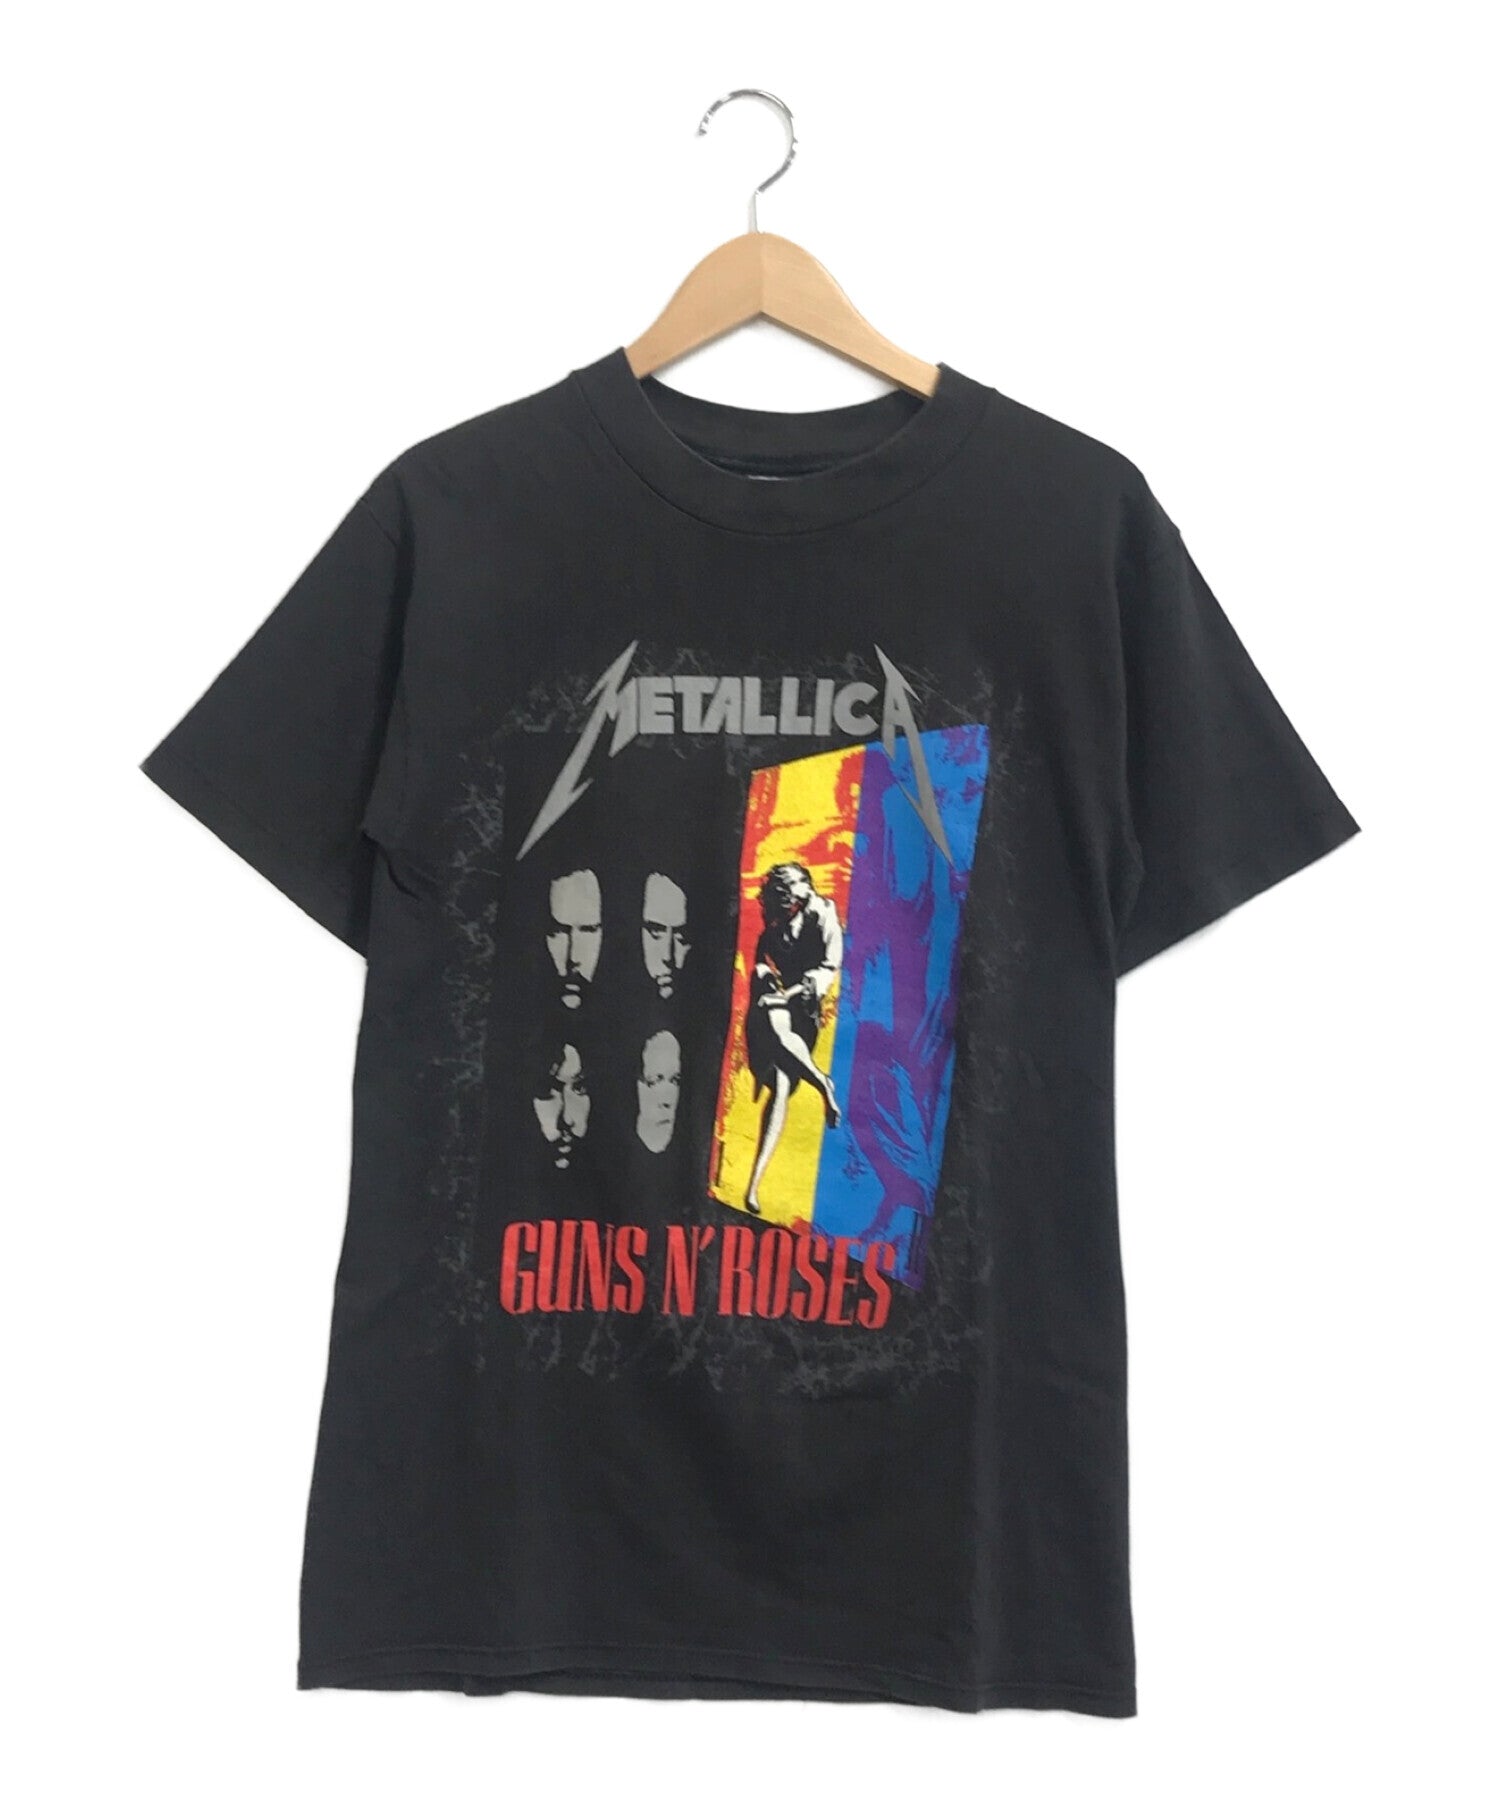 METALLICA x Guns N' Roses Band T-shirt 92's Tour